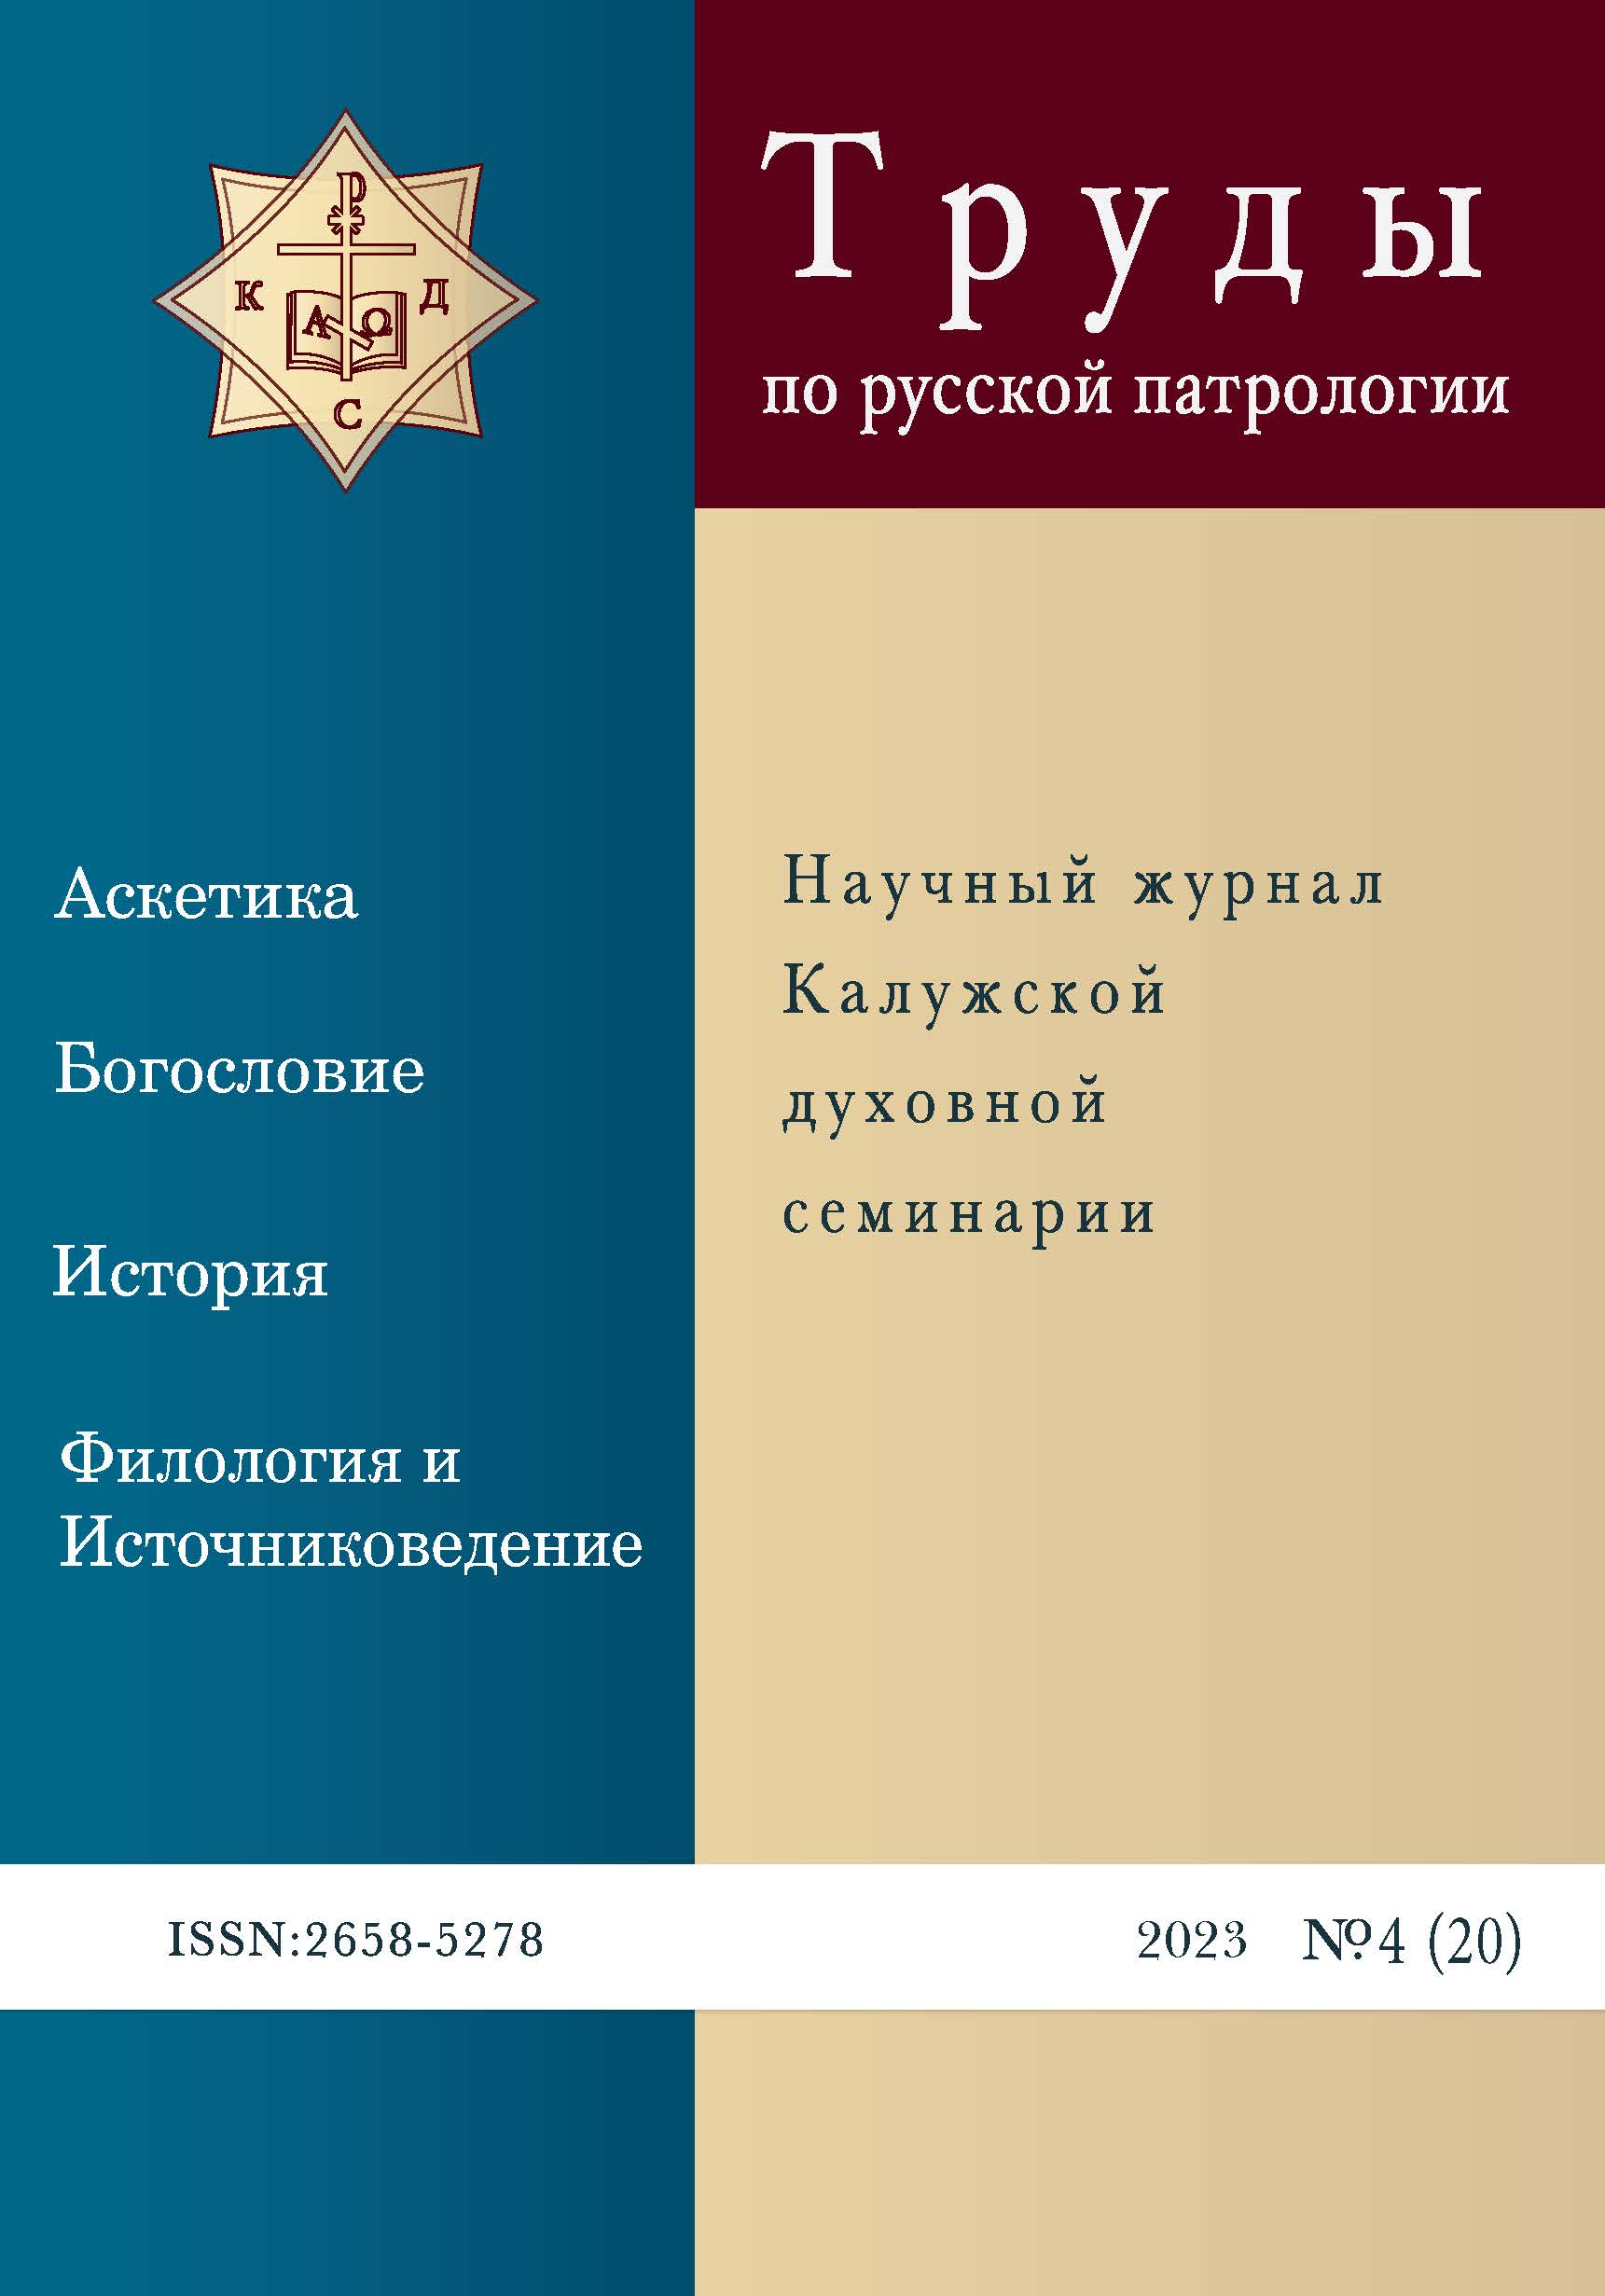 Издан новый номер журнала Труды по русской патрологии Калужской духовной семинарии